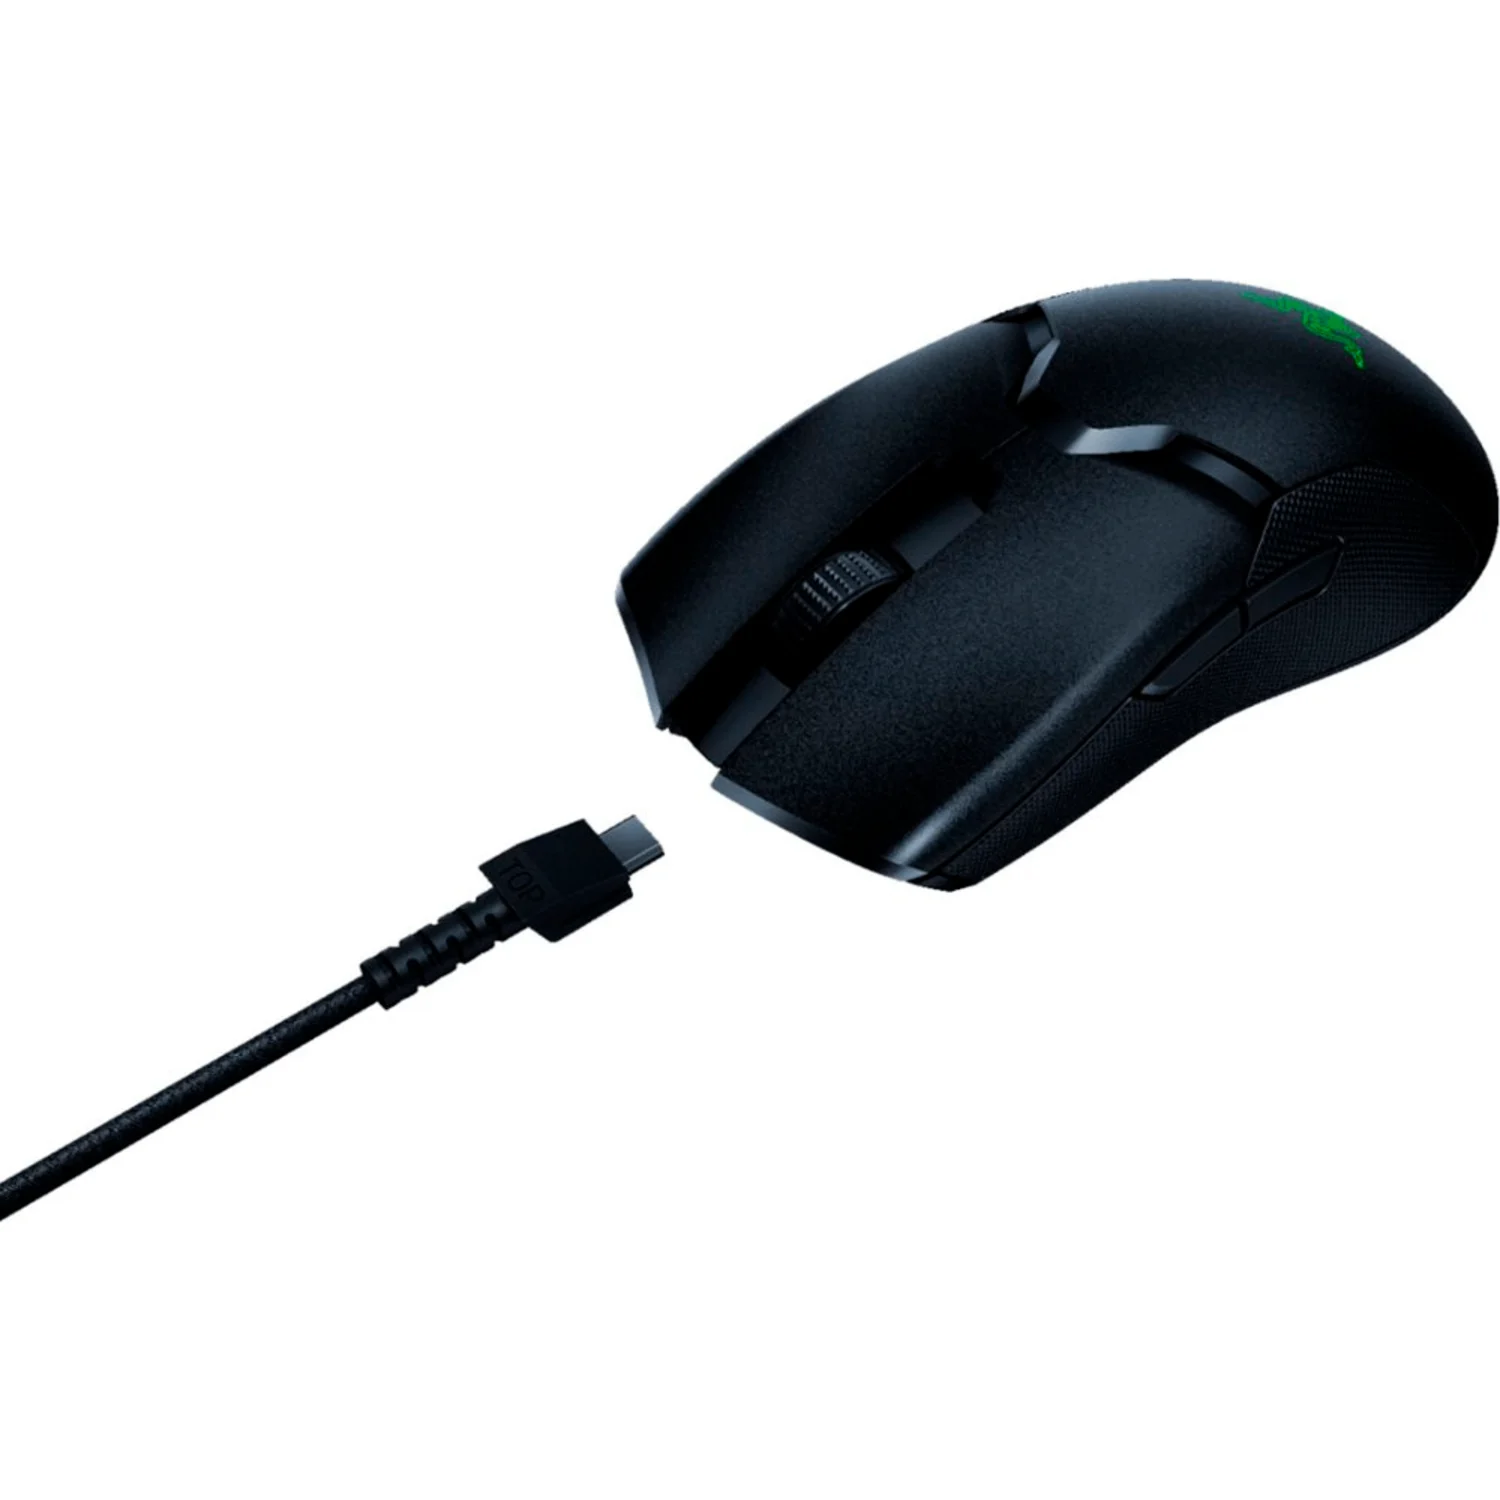 Mouse Gamer Razer Viper Ultimate - Preto (RZ01-03050200-R3U1)